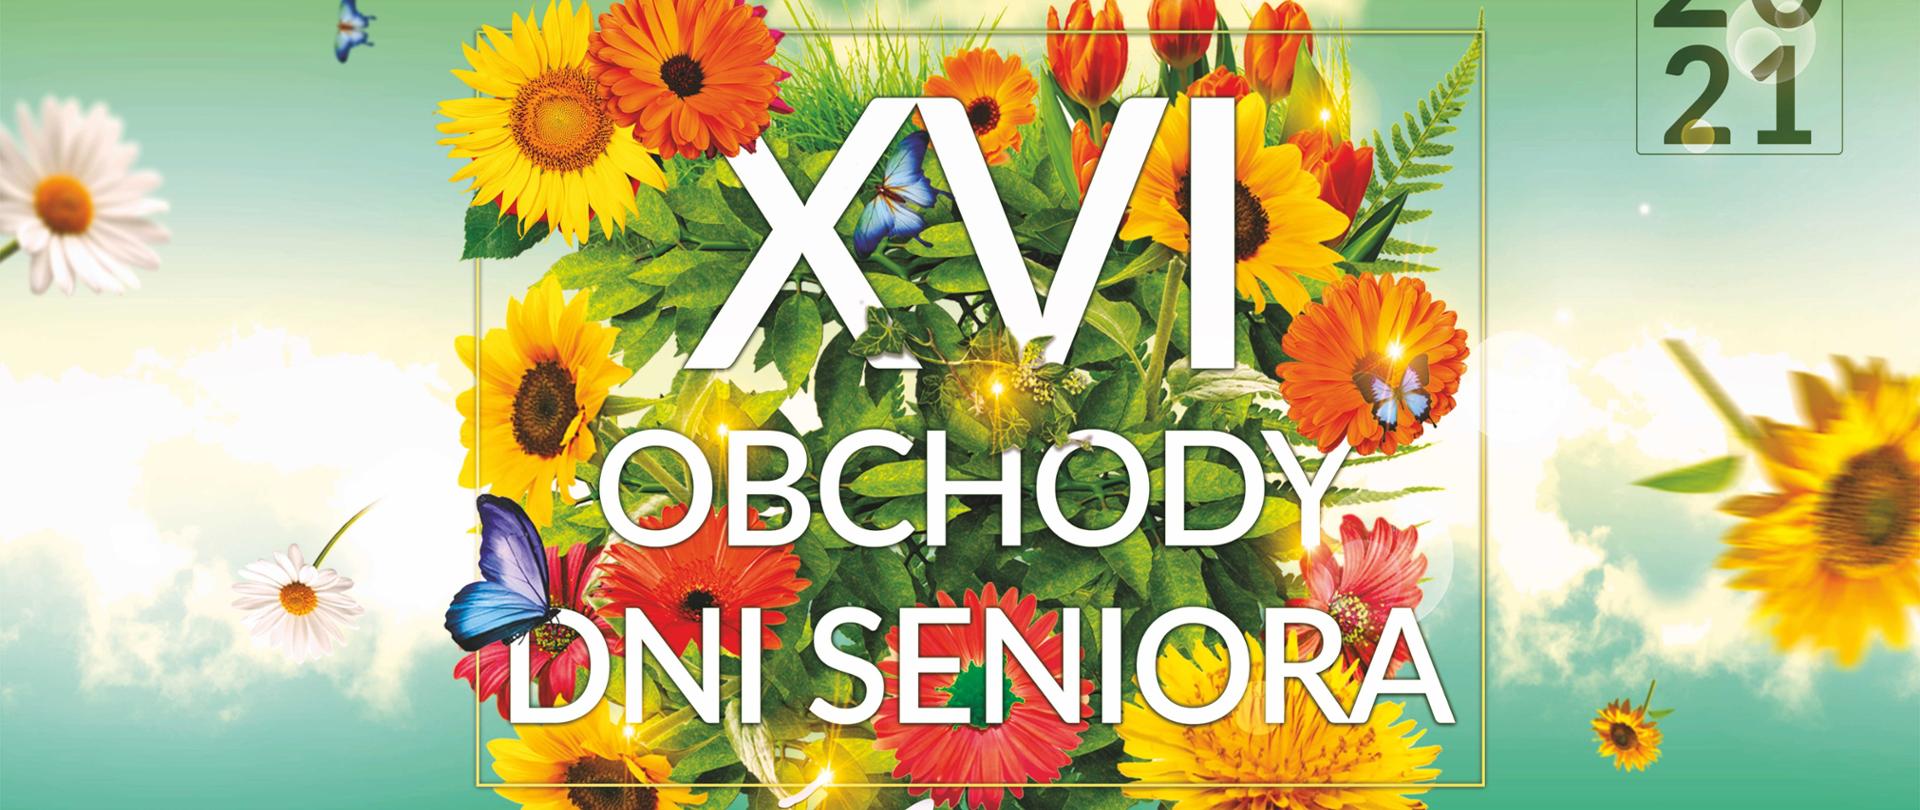 Plakat przedstawiający program XVI Obchody dni seniora w Świdnicy